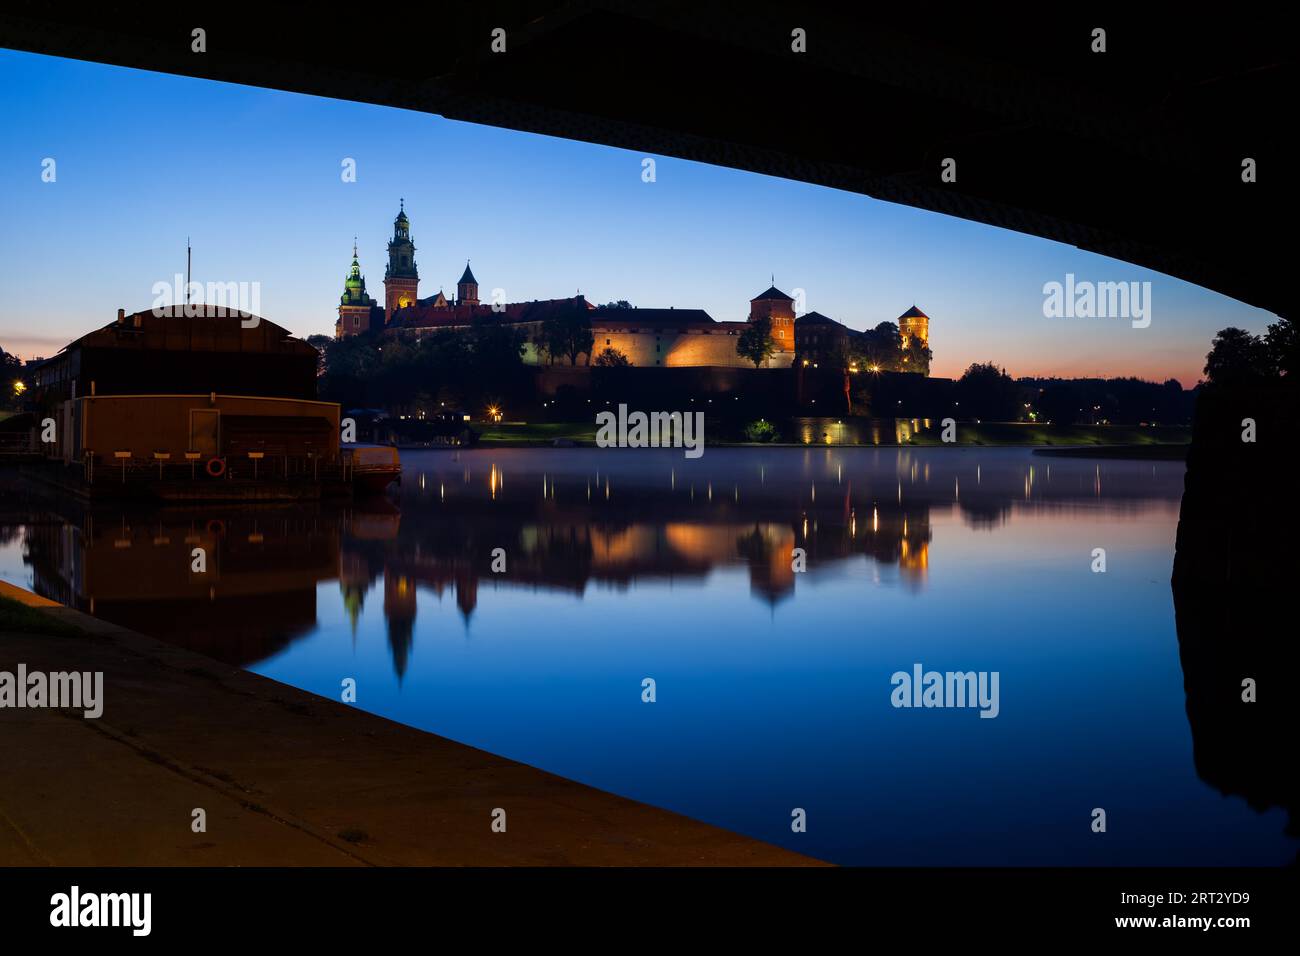 La Polonia, la città di Cracovia, in vista del Castello di Wawel a serata tranquilla da sotto il ponte sul fiume Vistola Foto Stock